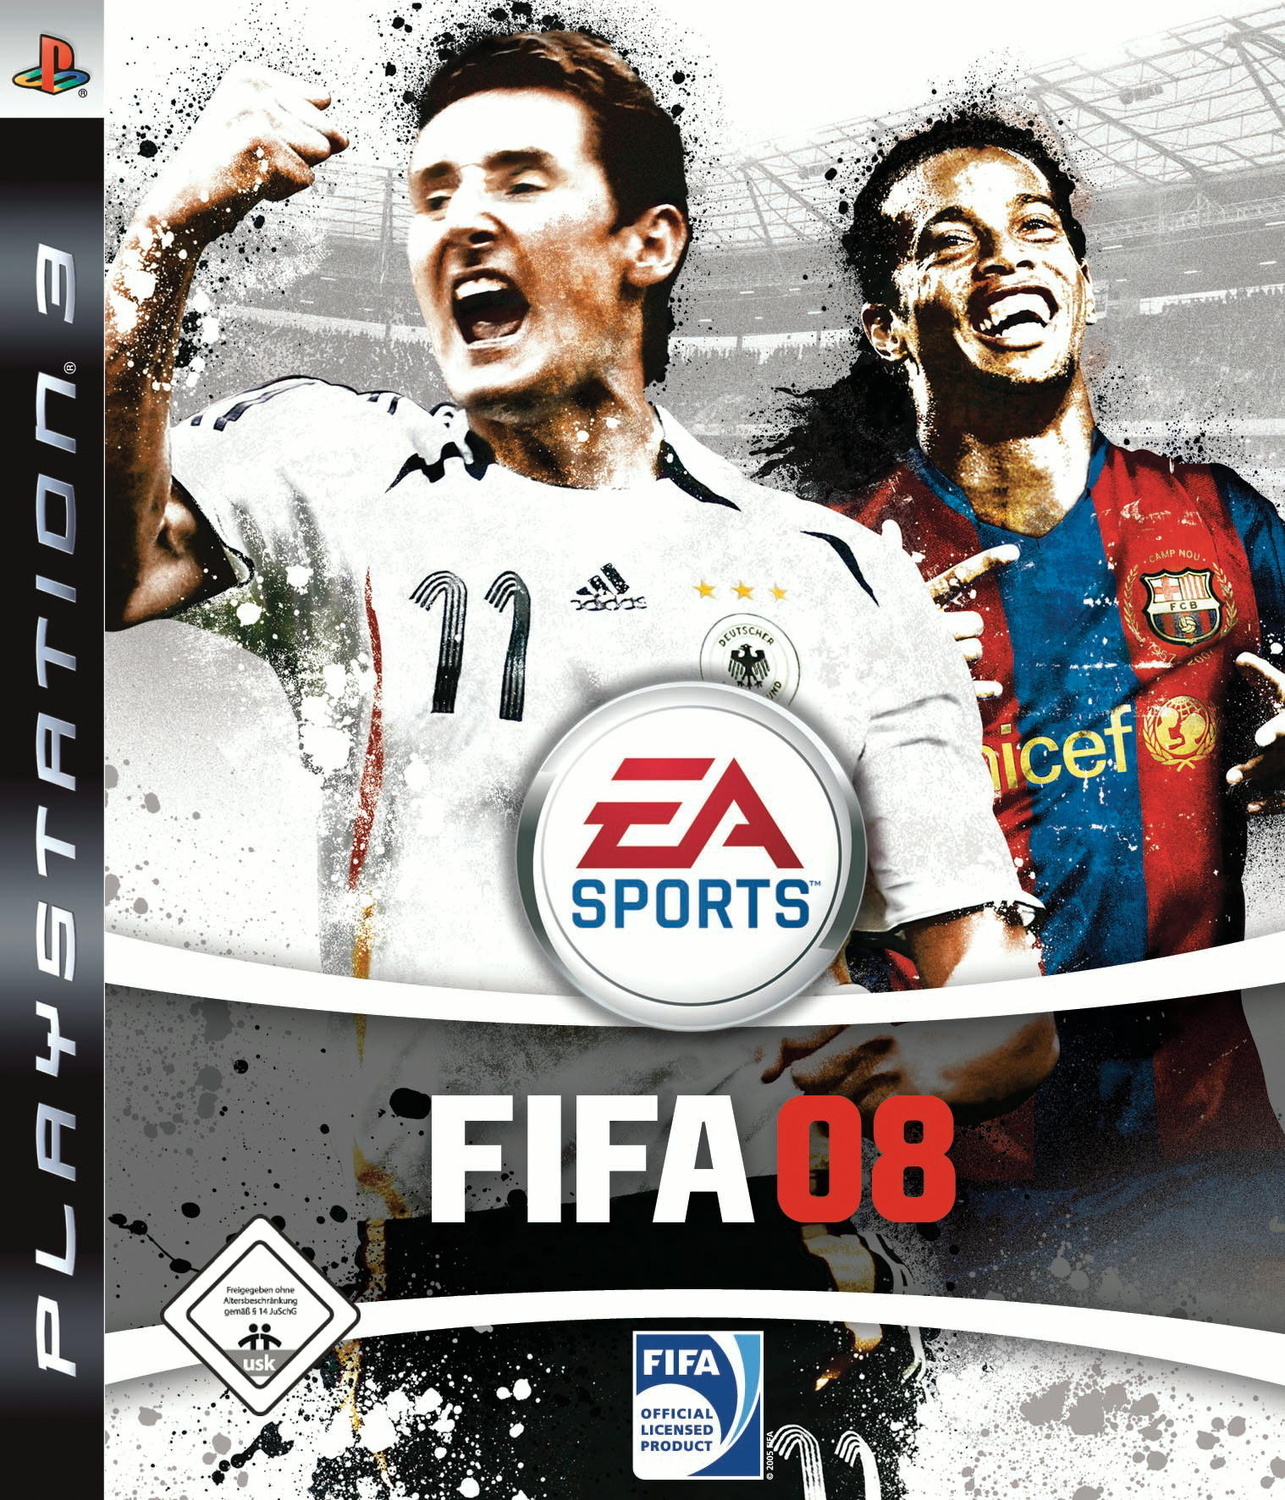 Fifa музыка. FIFA 08 диски PC. FIFA 08 ps3. ФИФА 08 ПС 3. FIFA 2007 обложка PC.